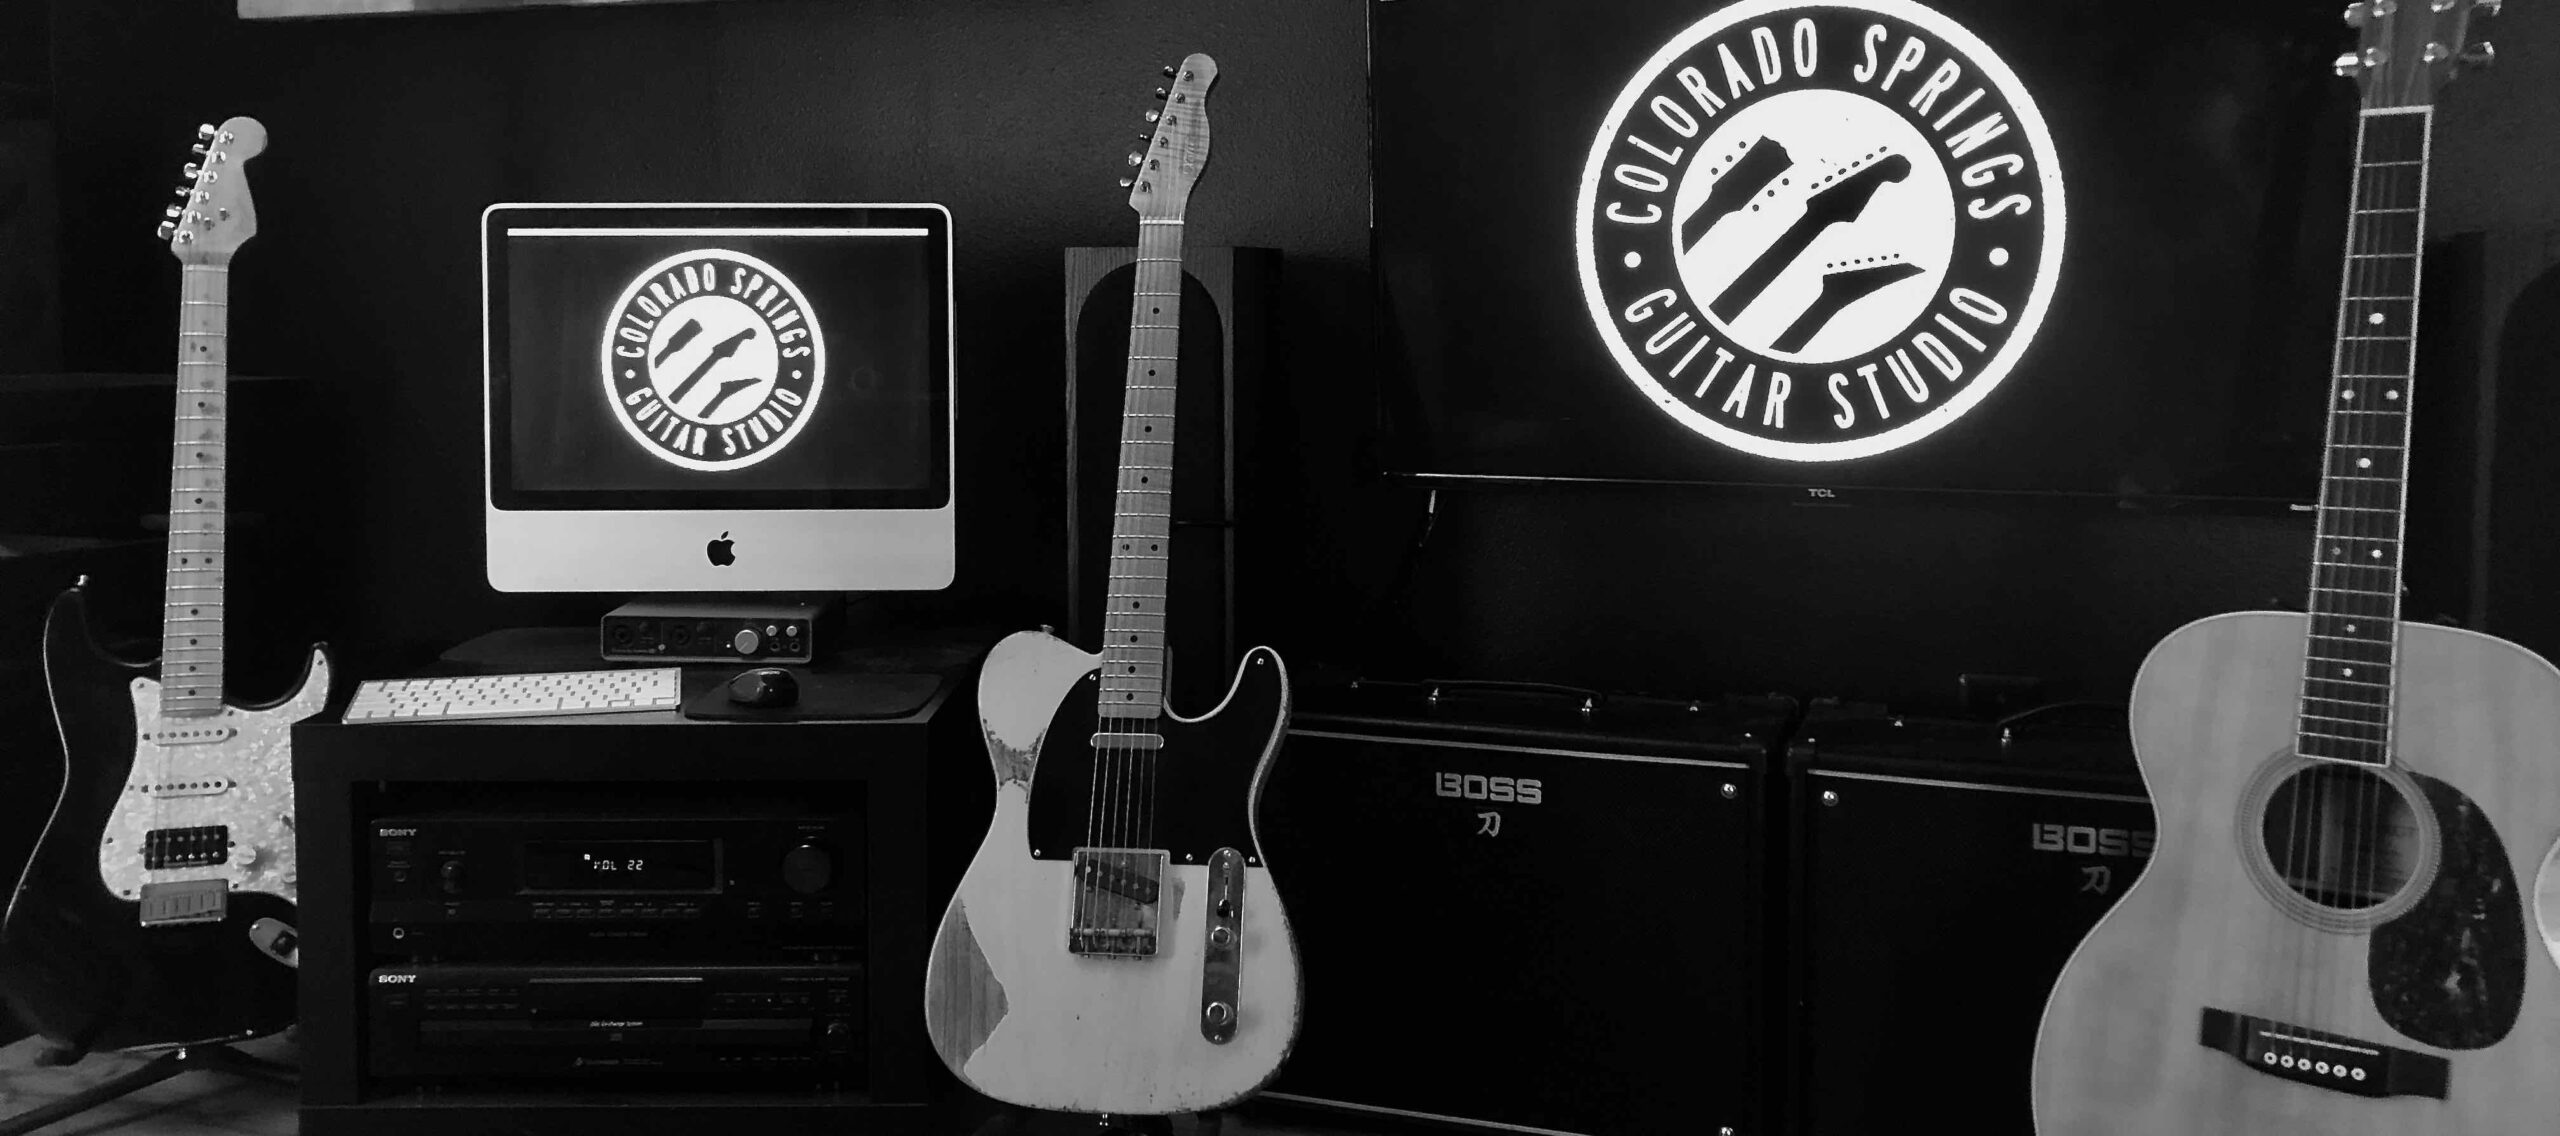 Colorado Springs Guitar Studio Office Space